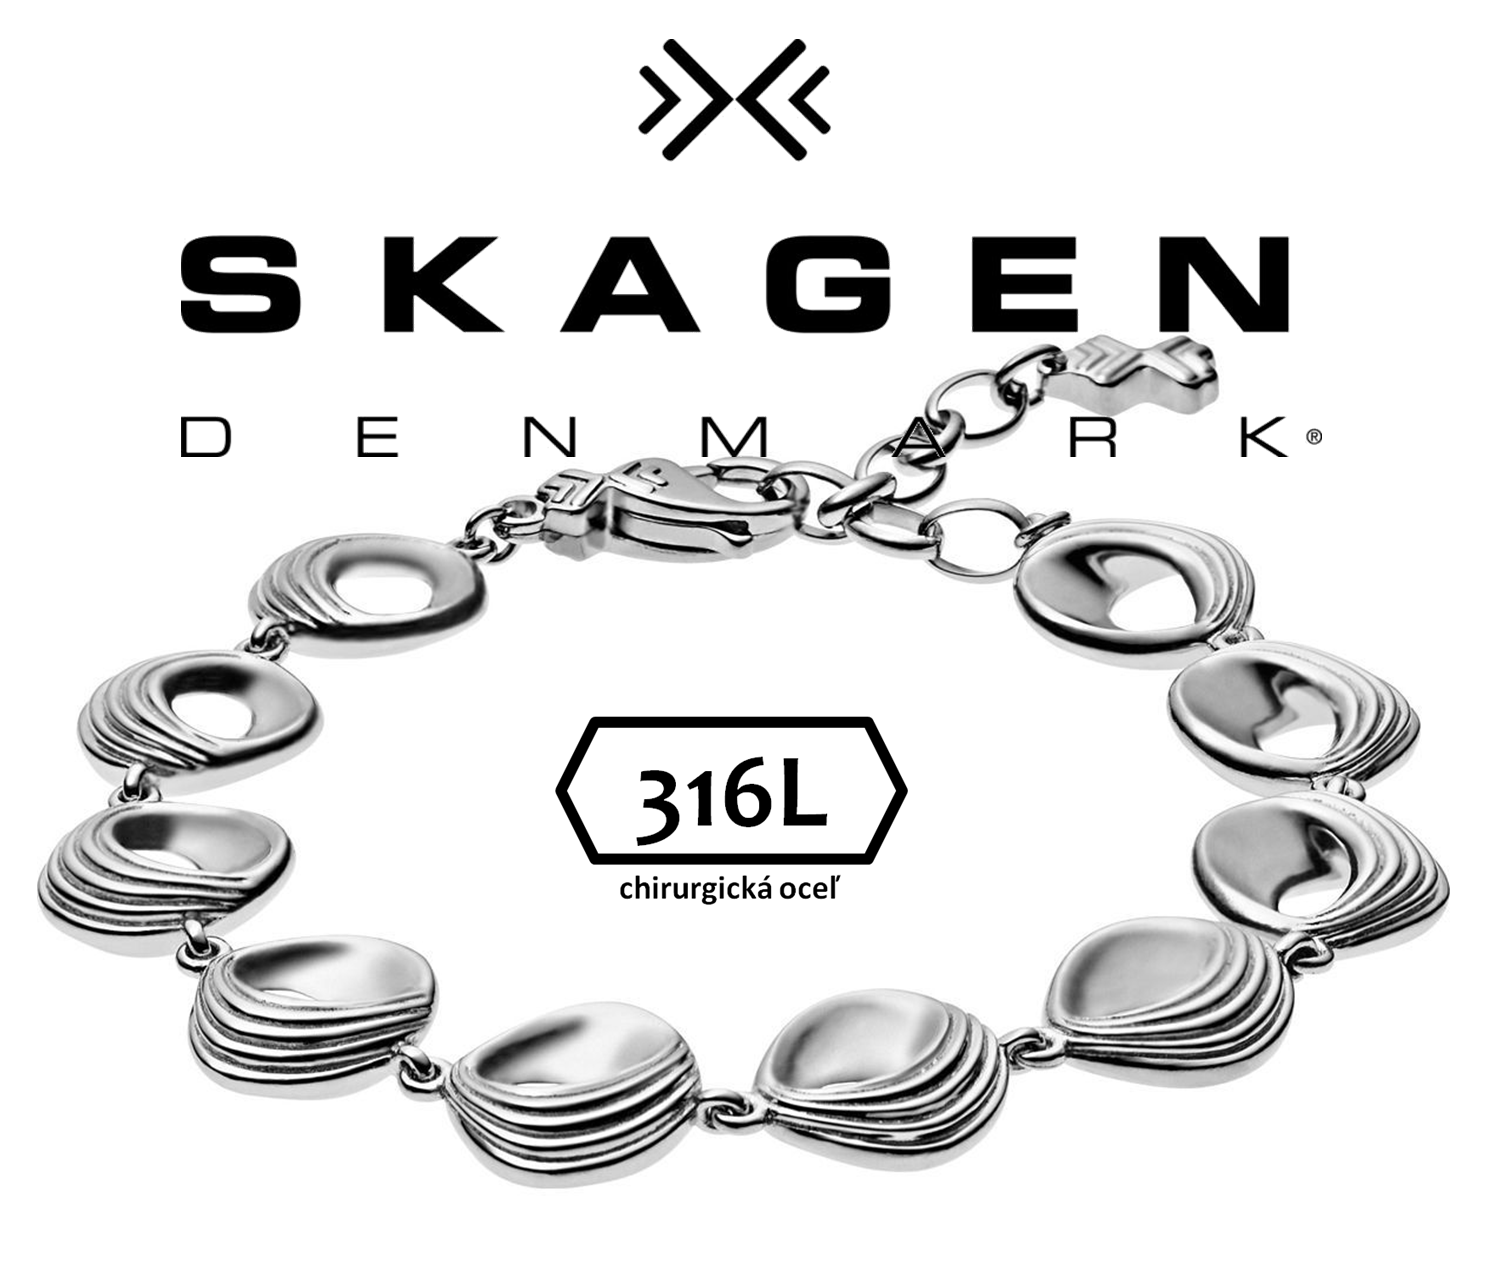 SKAGEN - luxusný značkový dámsky náramok -  nastaviteľná veľkosť